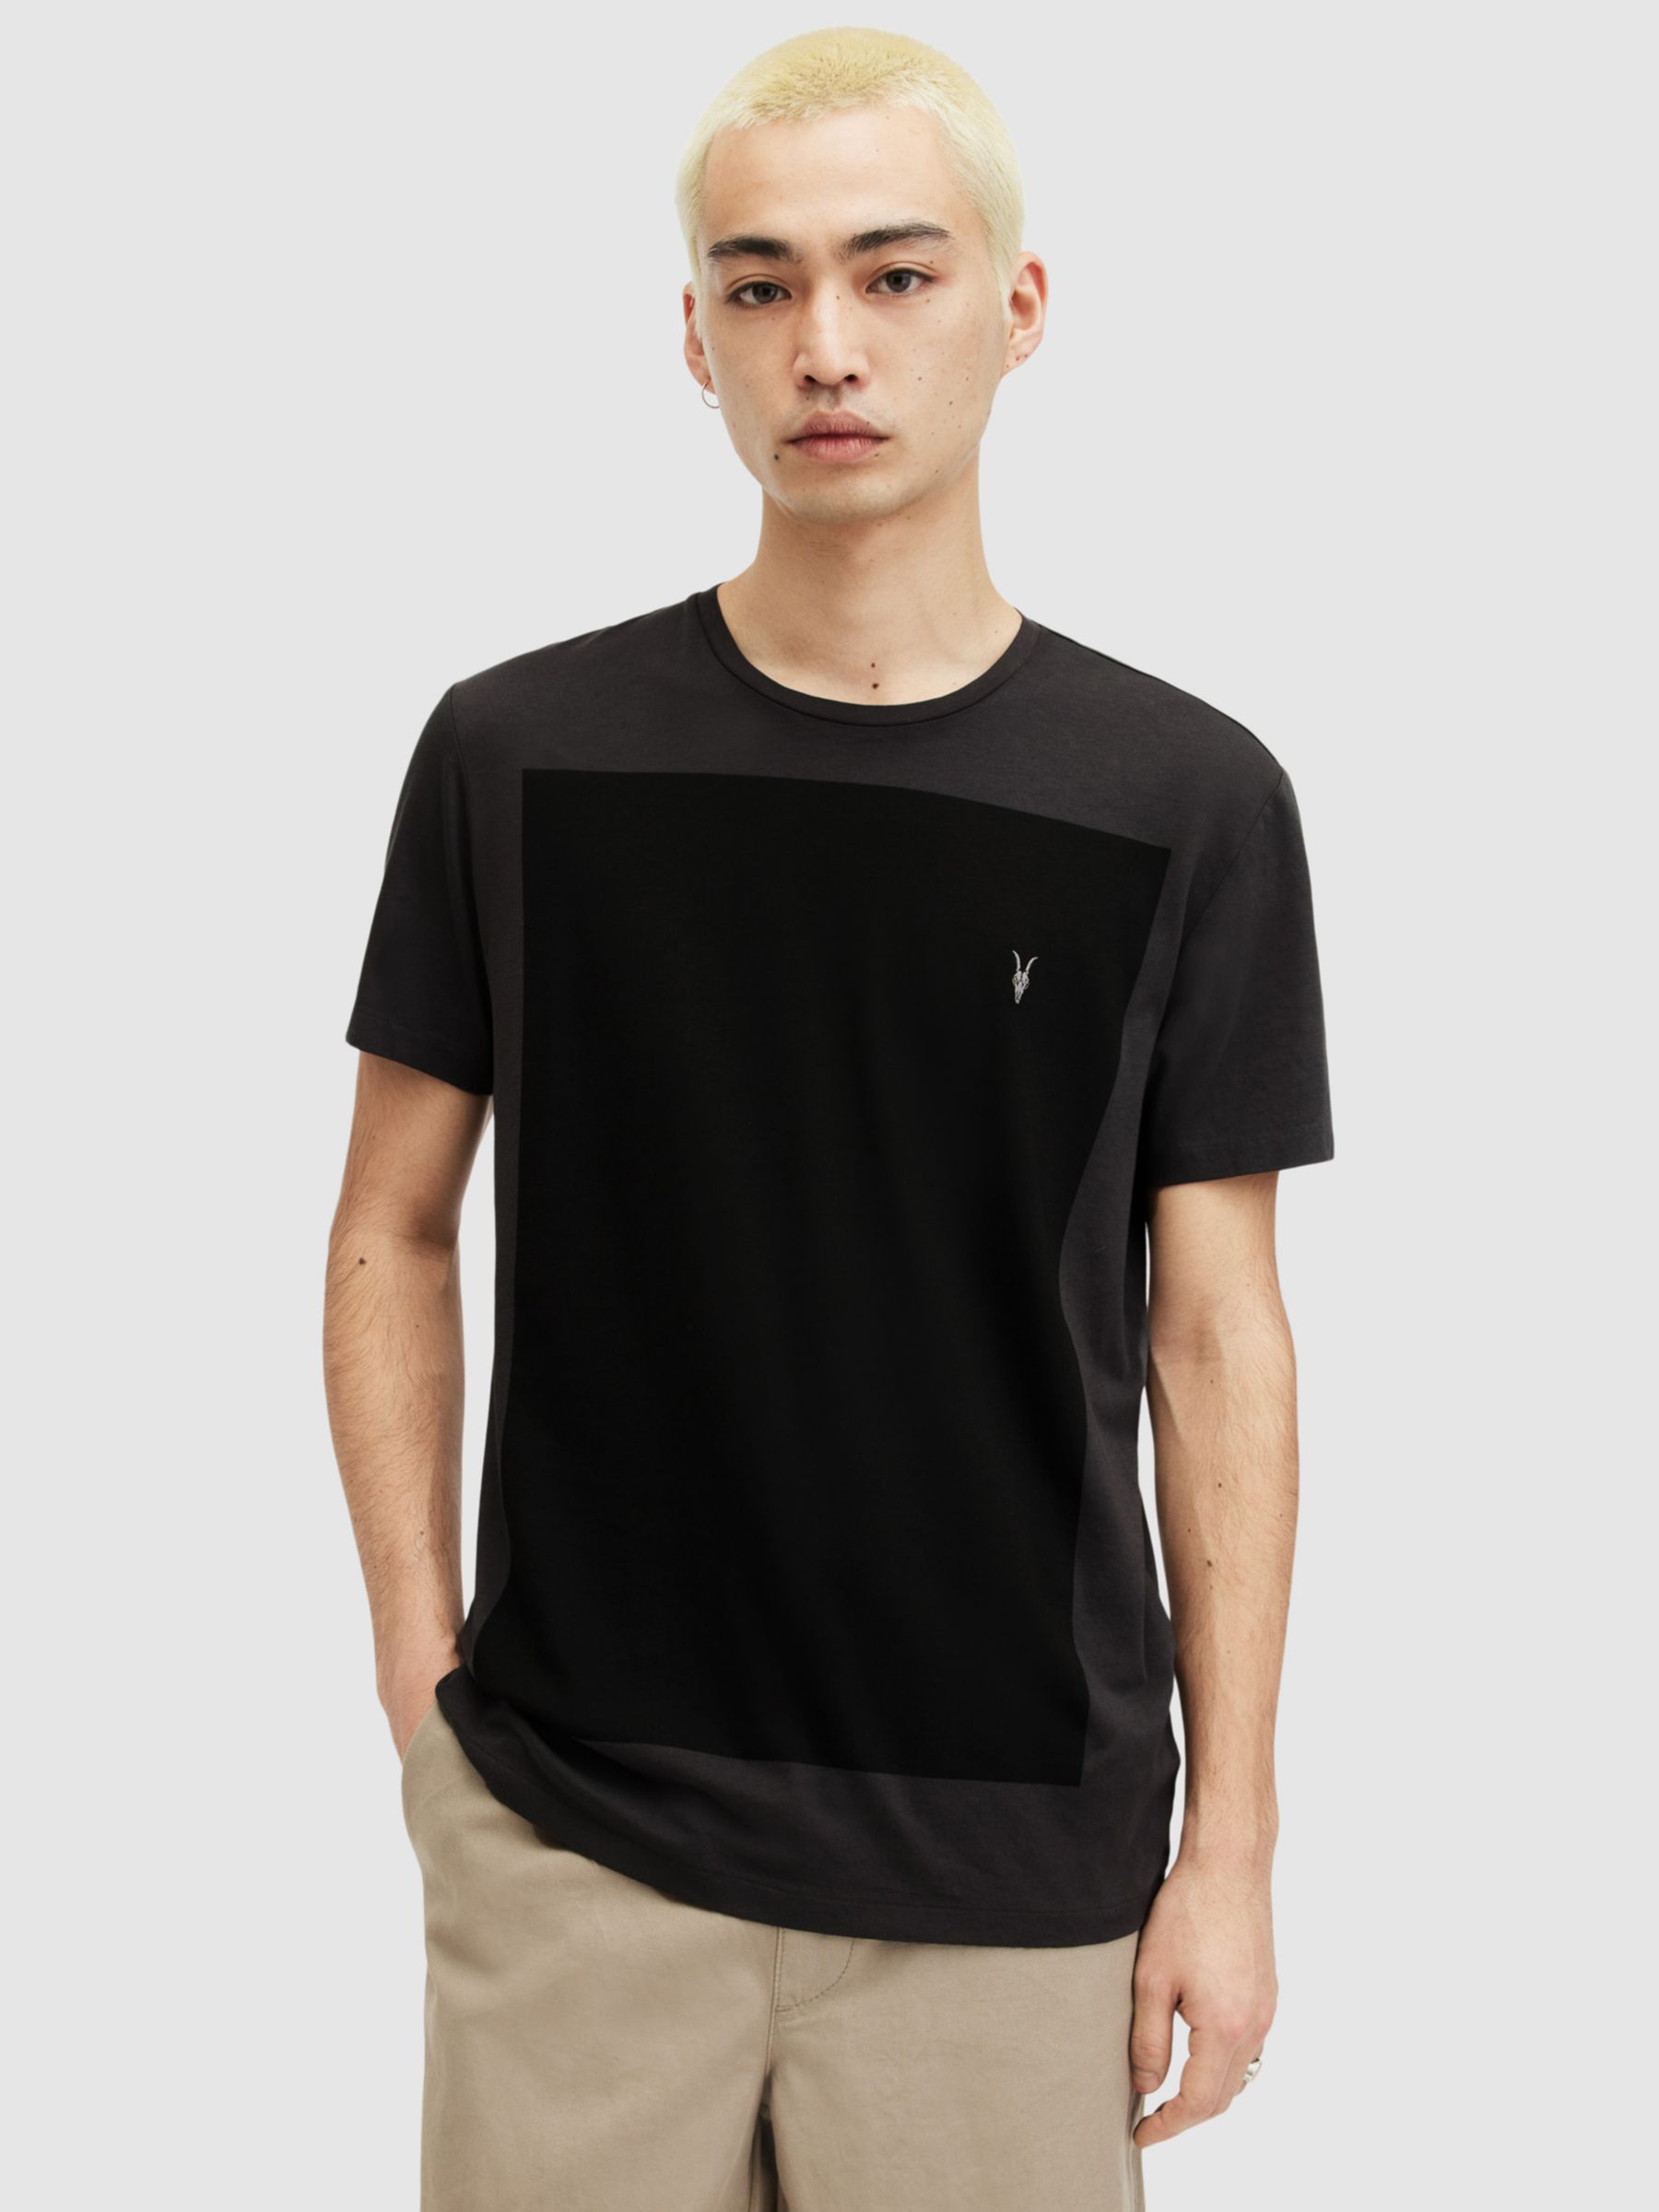 AllSaints Lobke Colour Block T-Shirt, Washed Black/Jet Black, XS